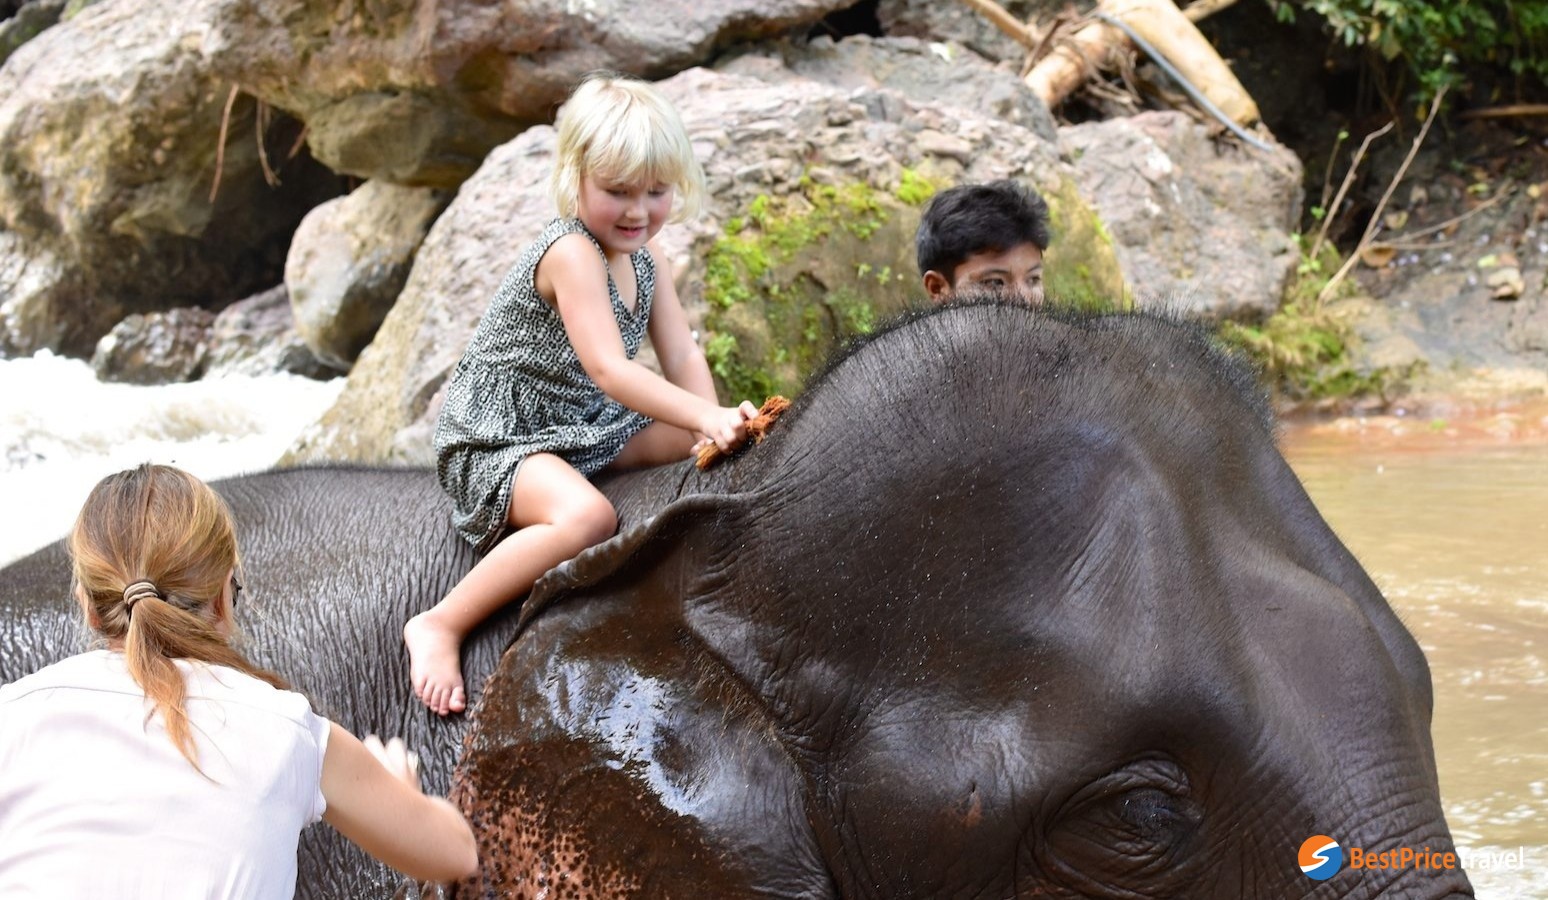 Washing For Elephant